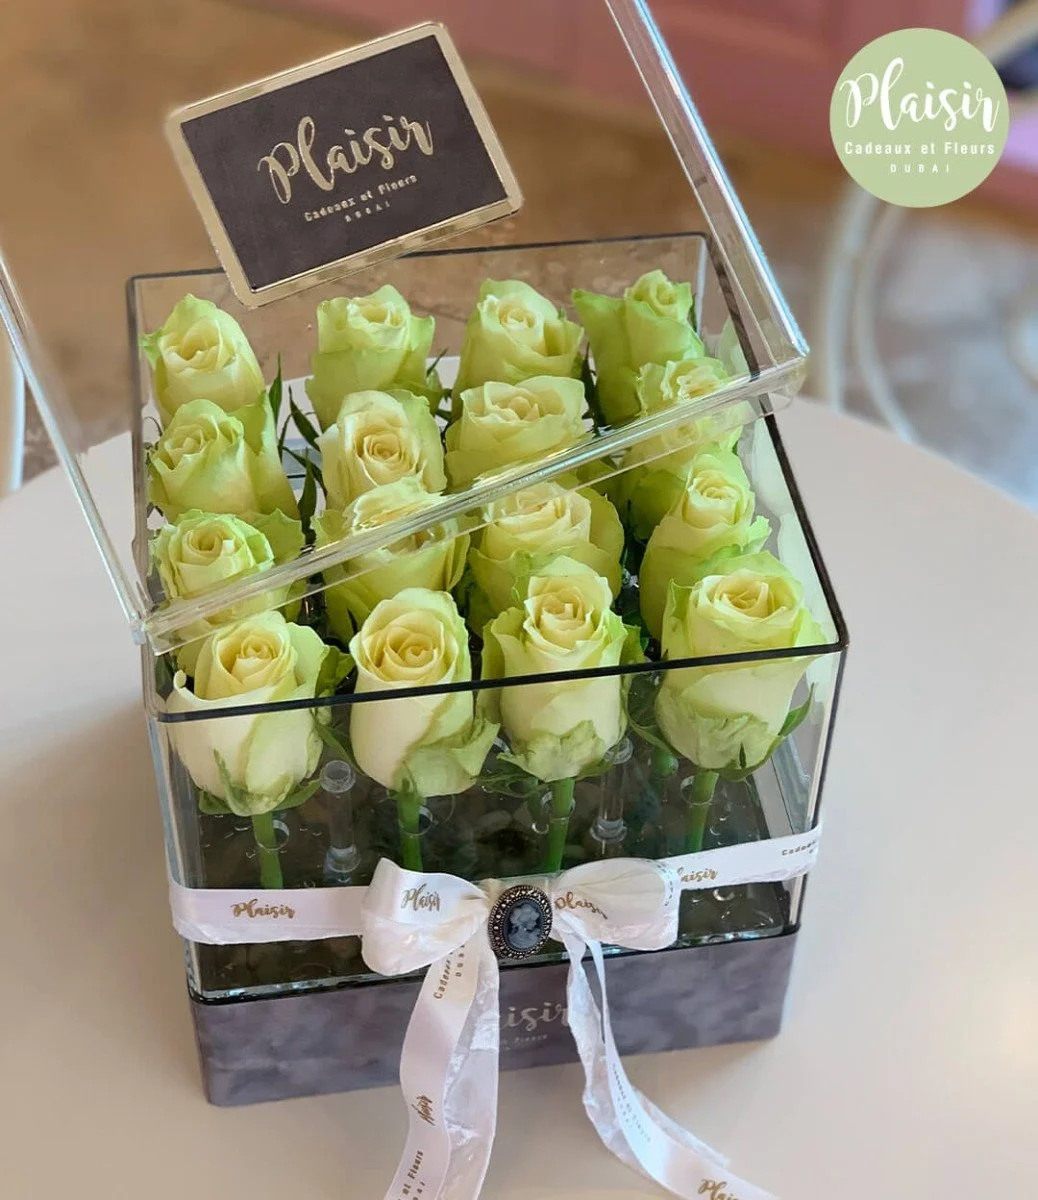 Ecuadorian Fresh White Roses In A Box By Plaisir